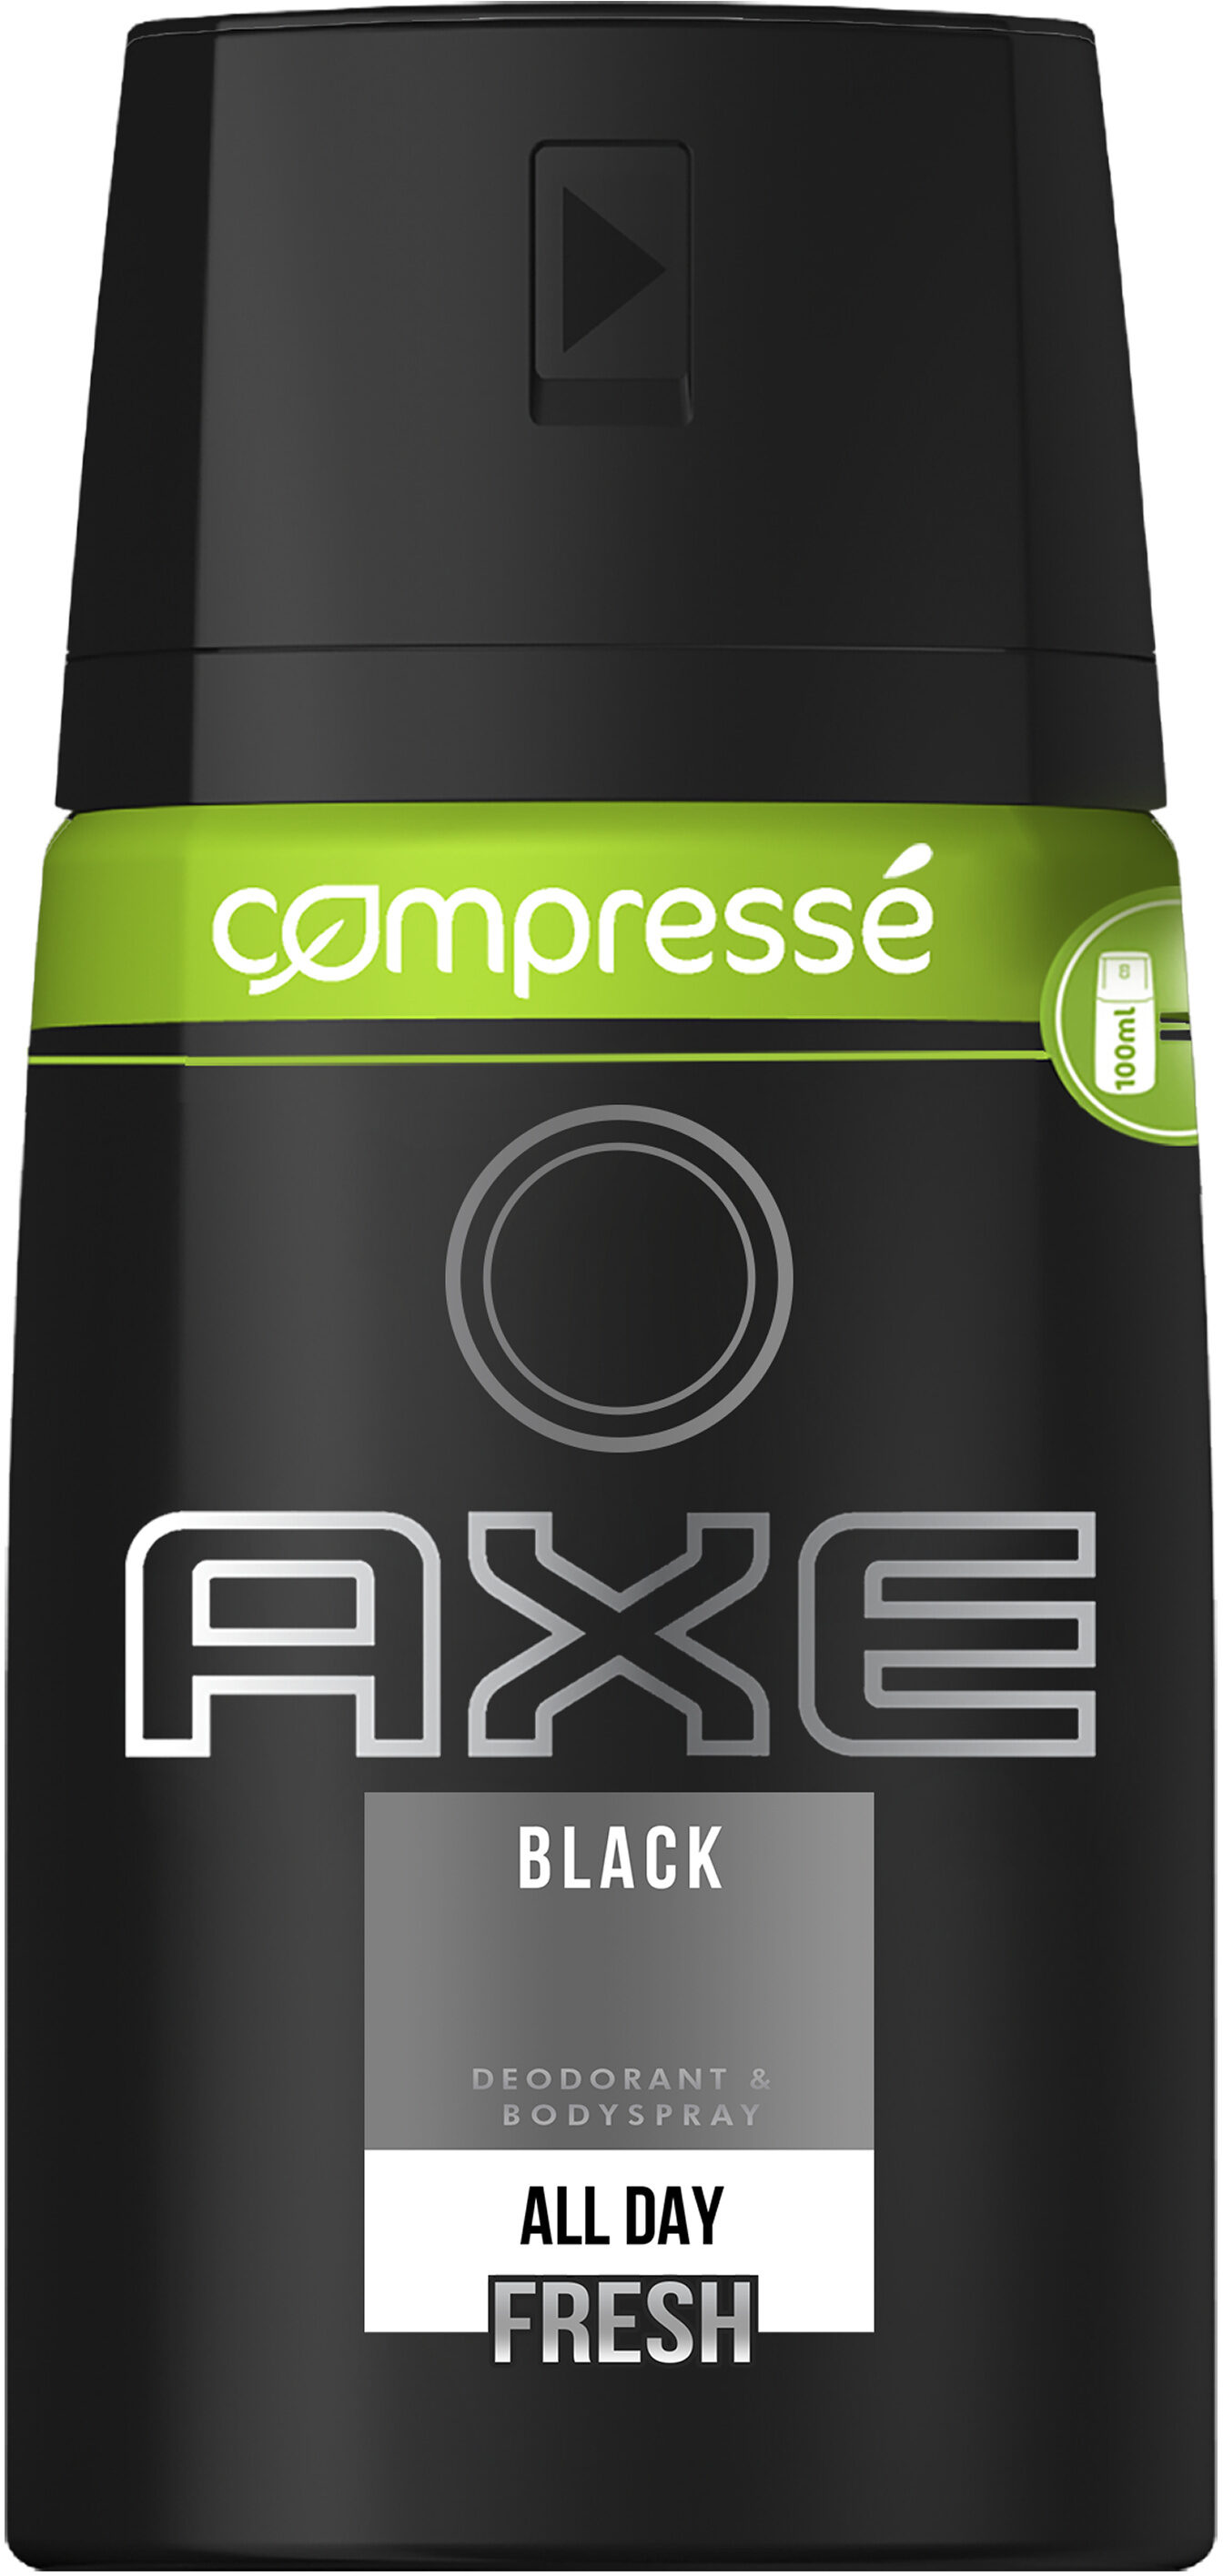 AXE Déodorant Spray Antibactérien Black Compressé - Produit - fr